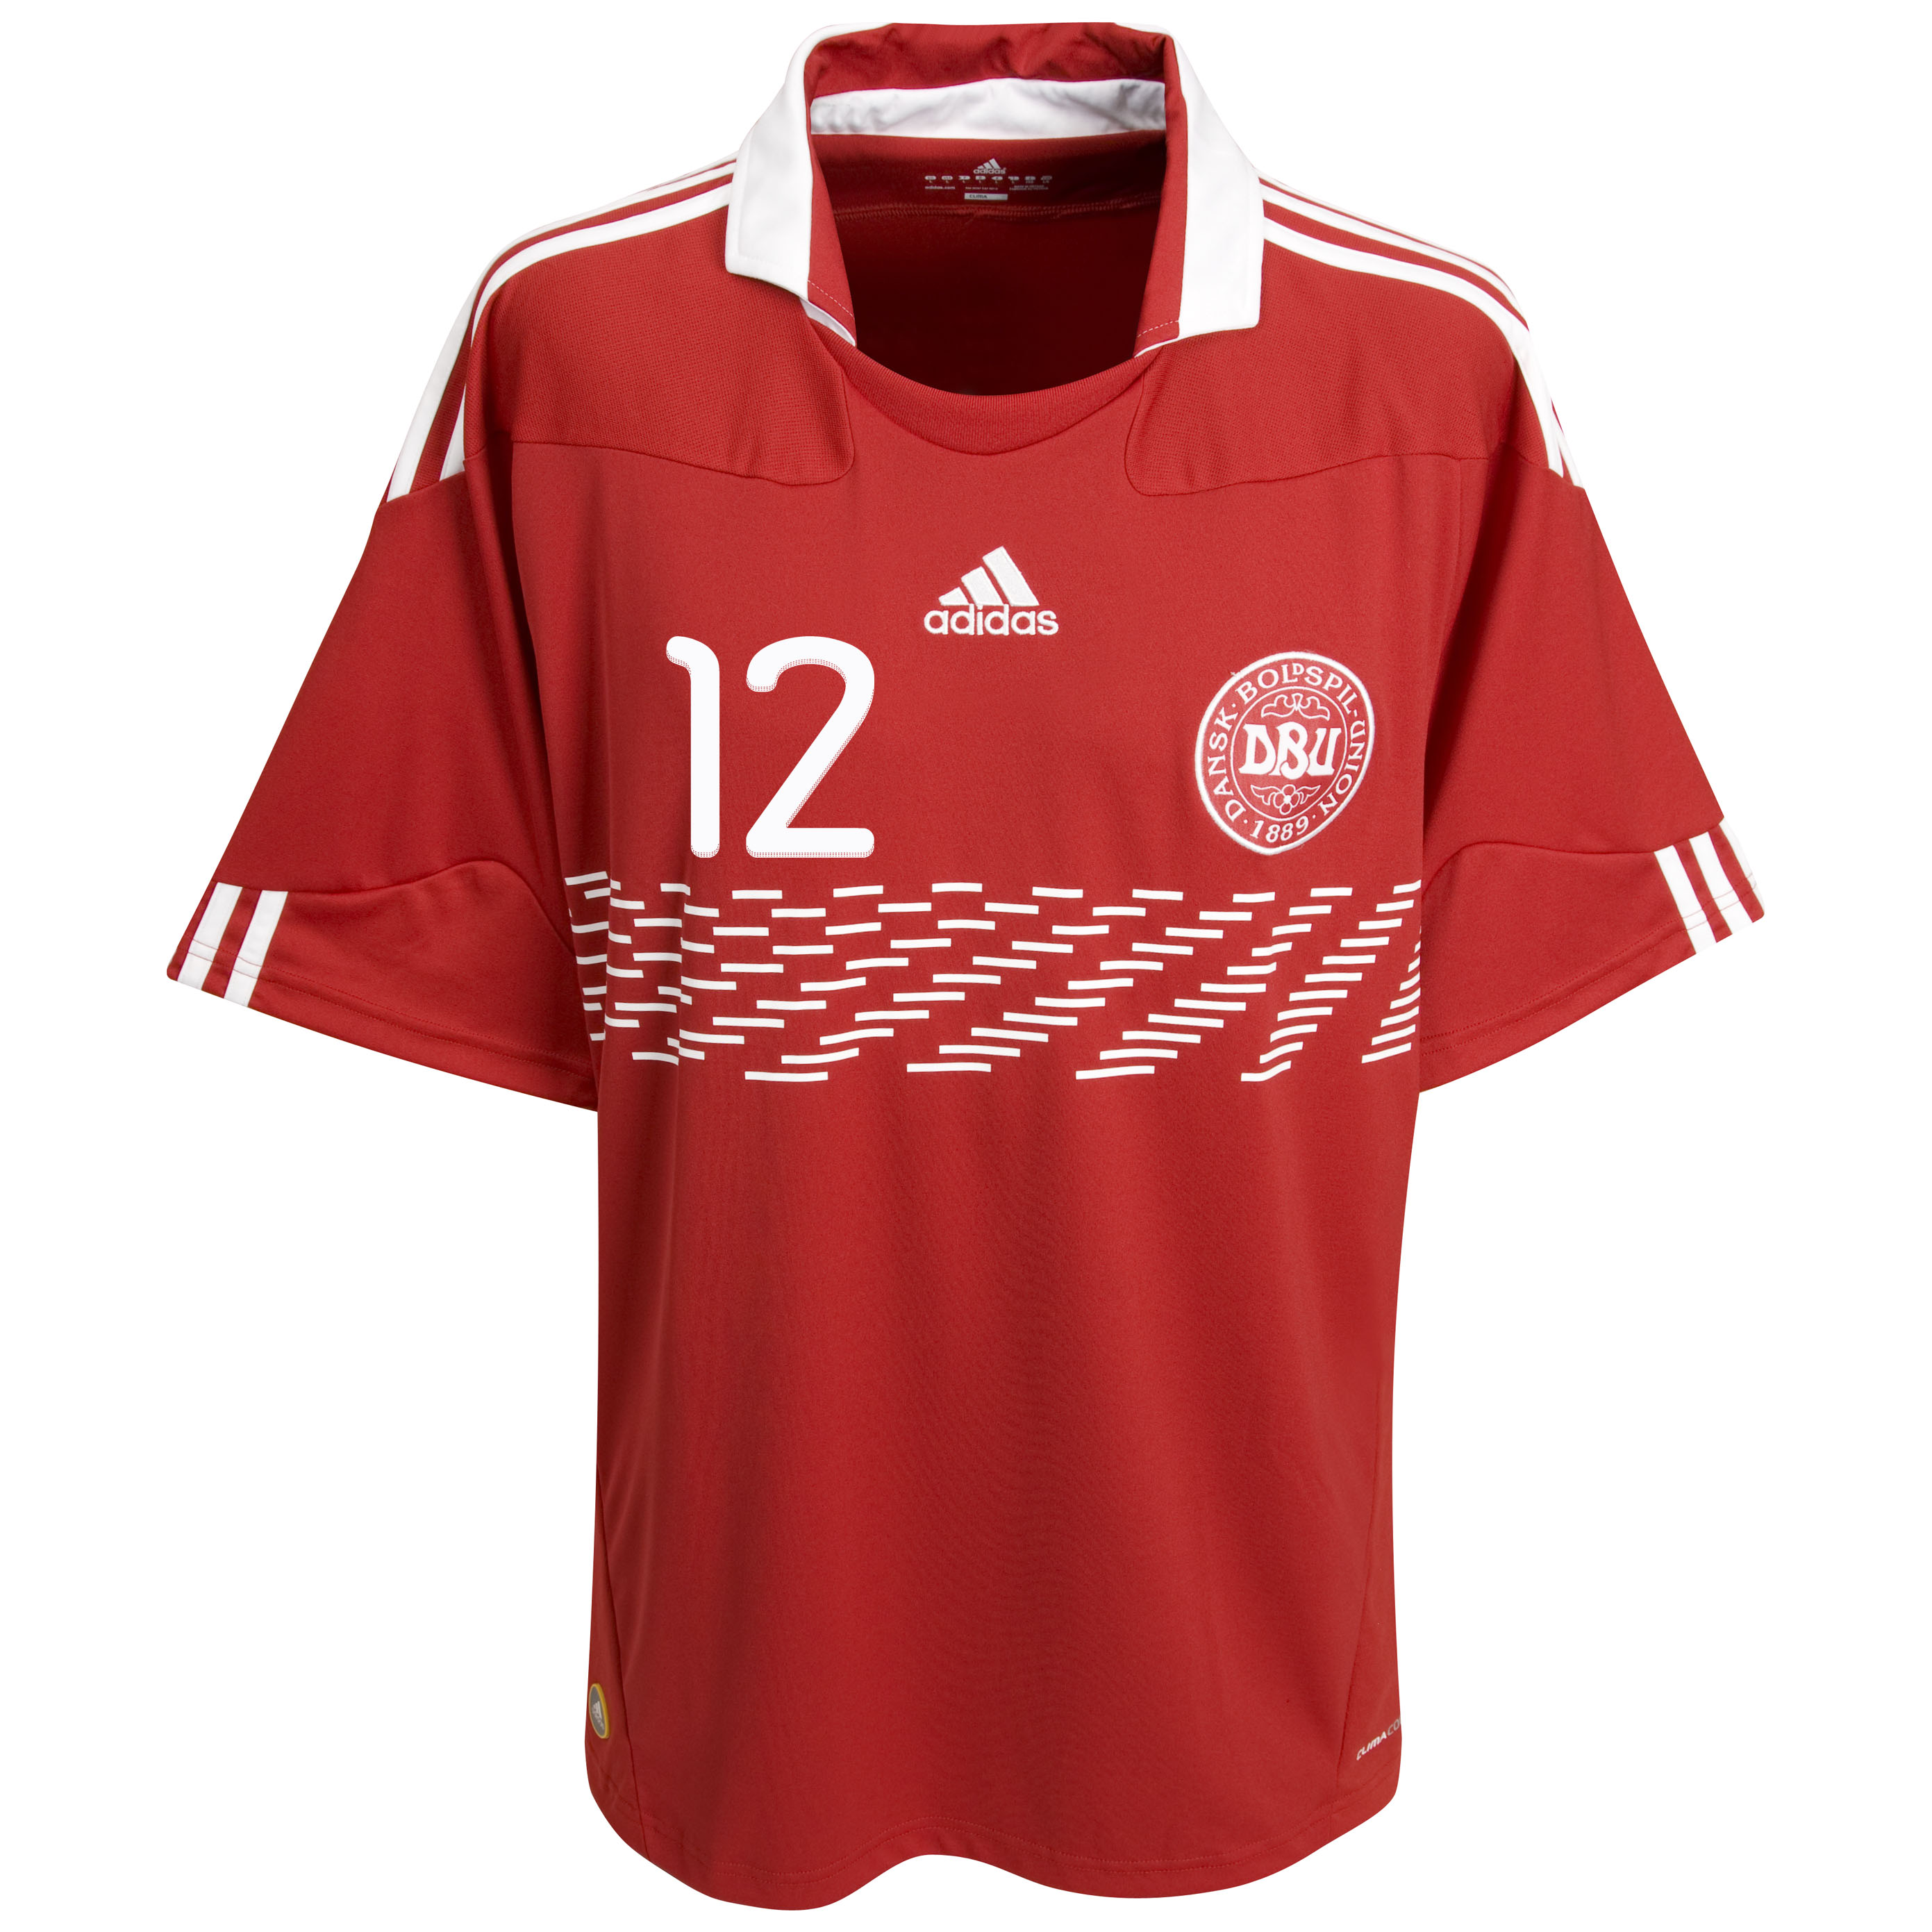 الملابس النهائيه لكأس العالم (2010)..... Kb-73524a